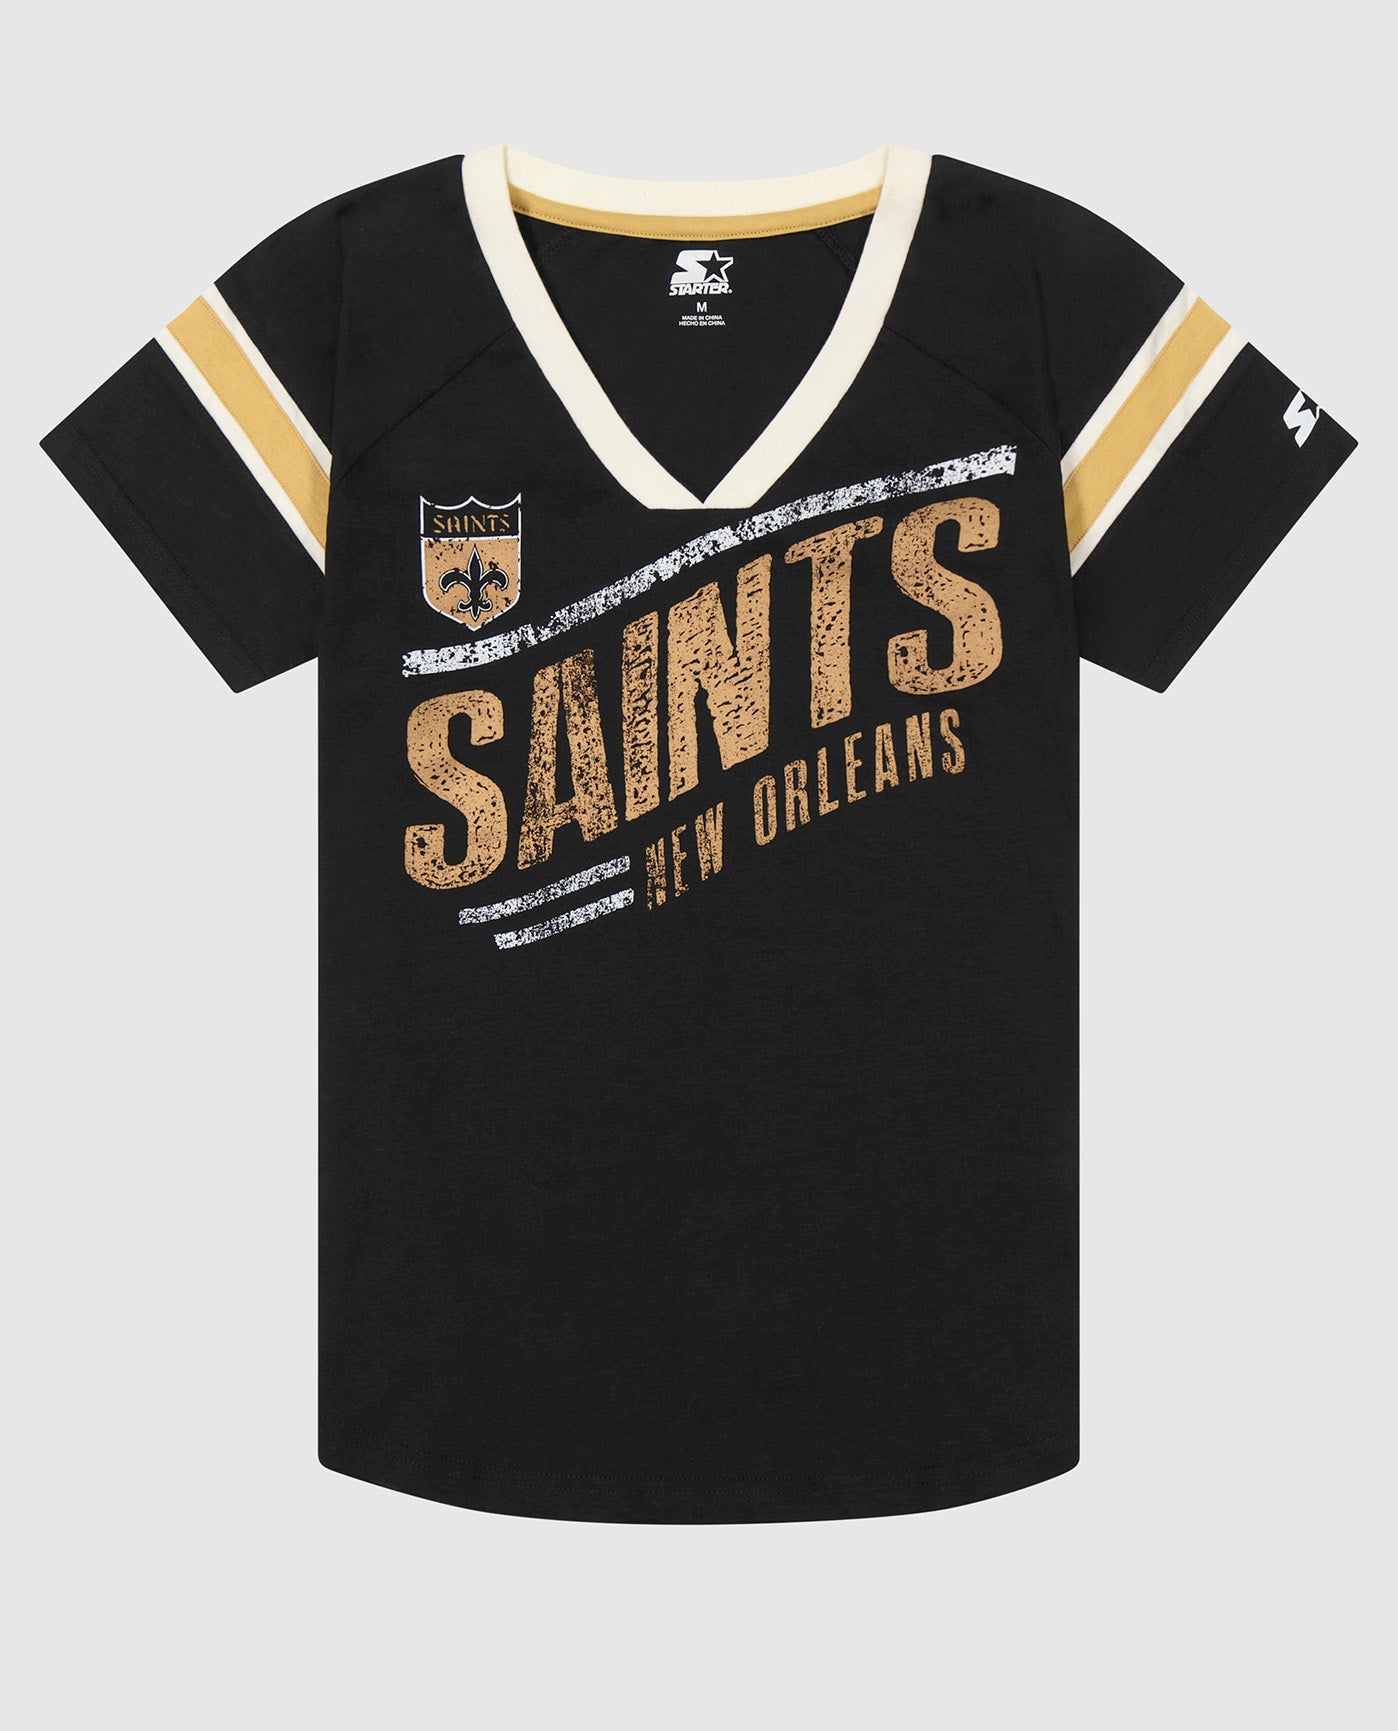 new orleans saints shirts for men